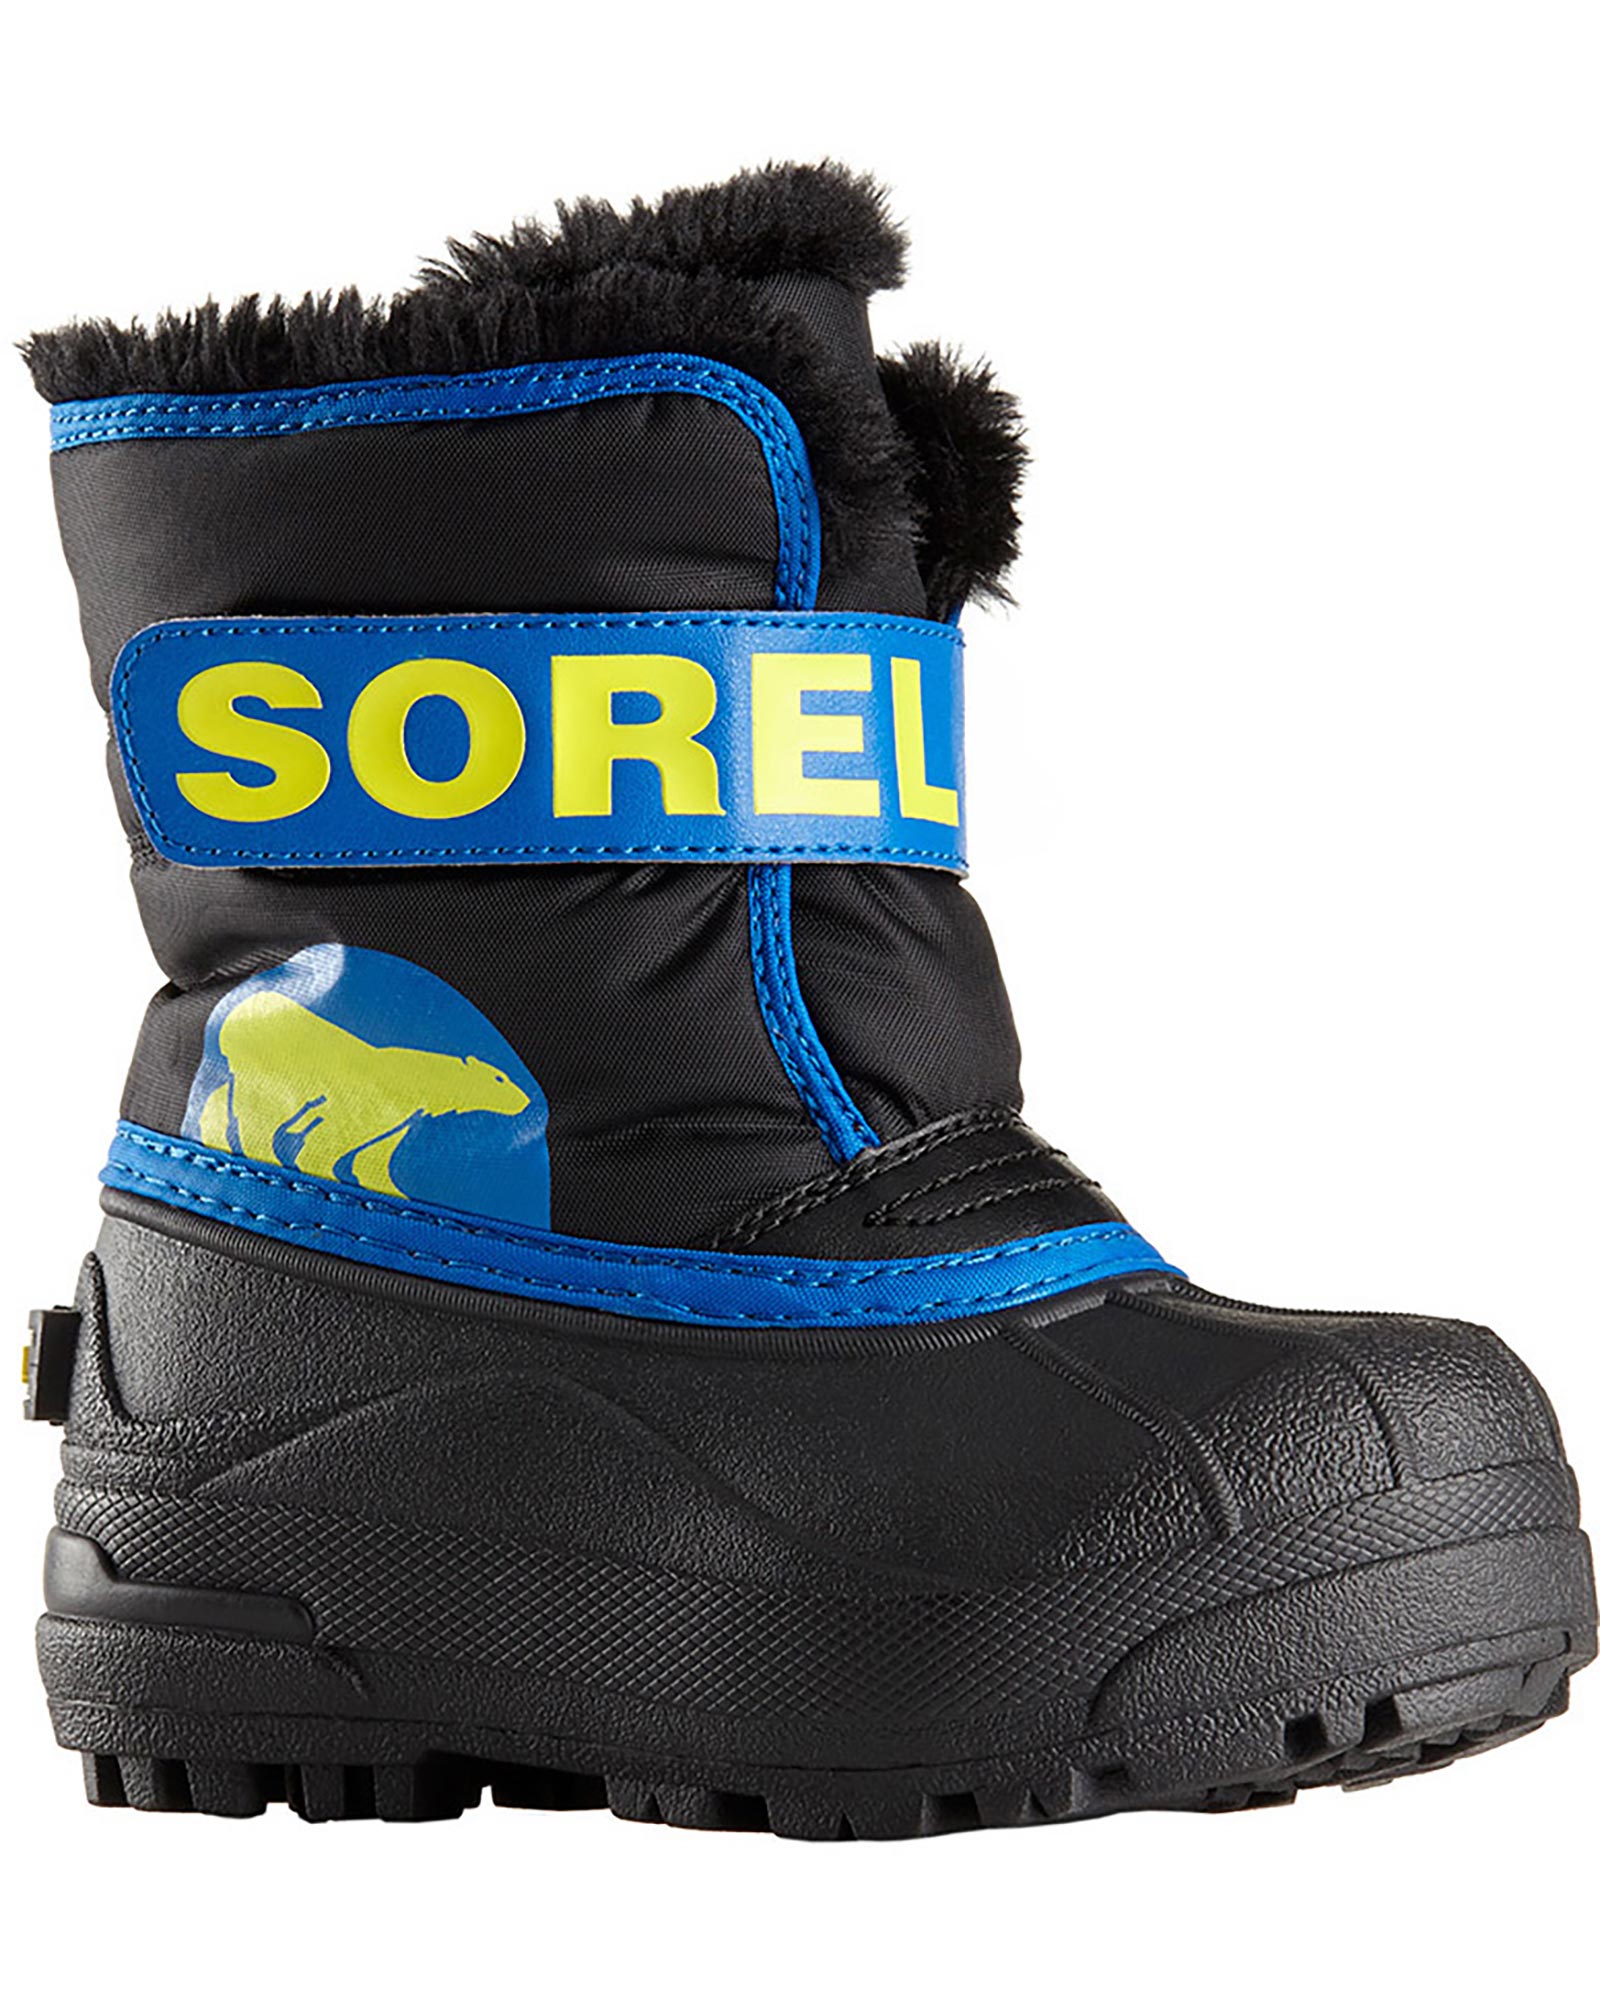 Sorel Snow Commander Toddler Snow Boots - Black/Super Blue UK 9 INF